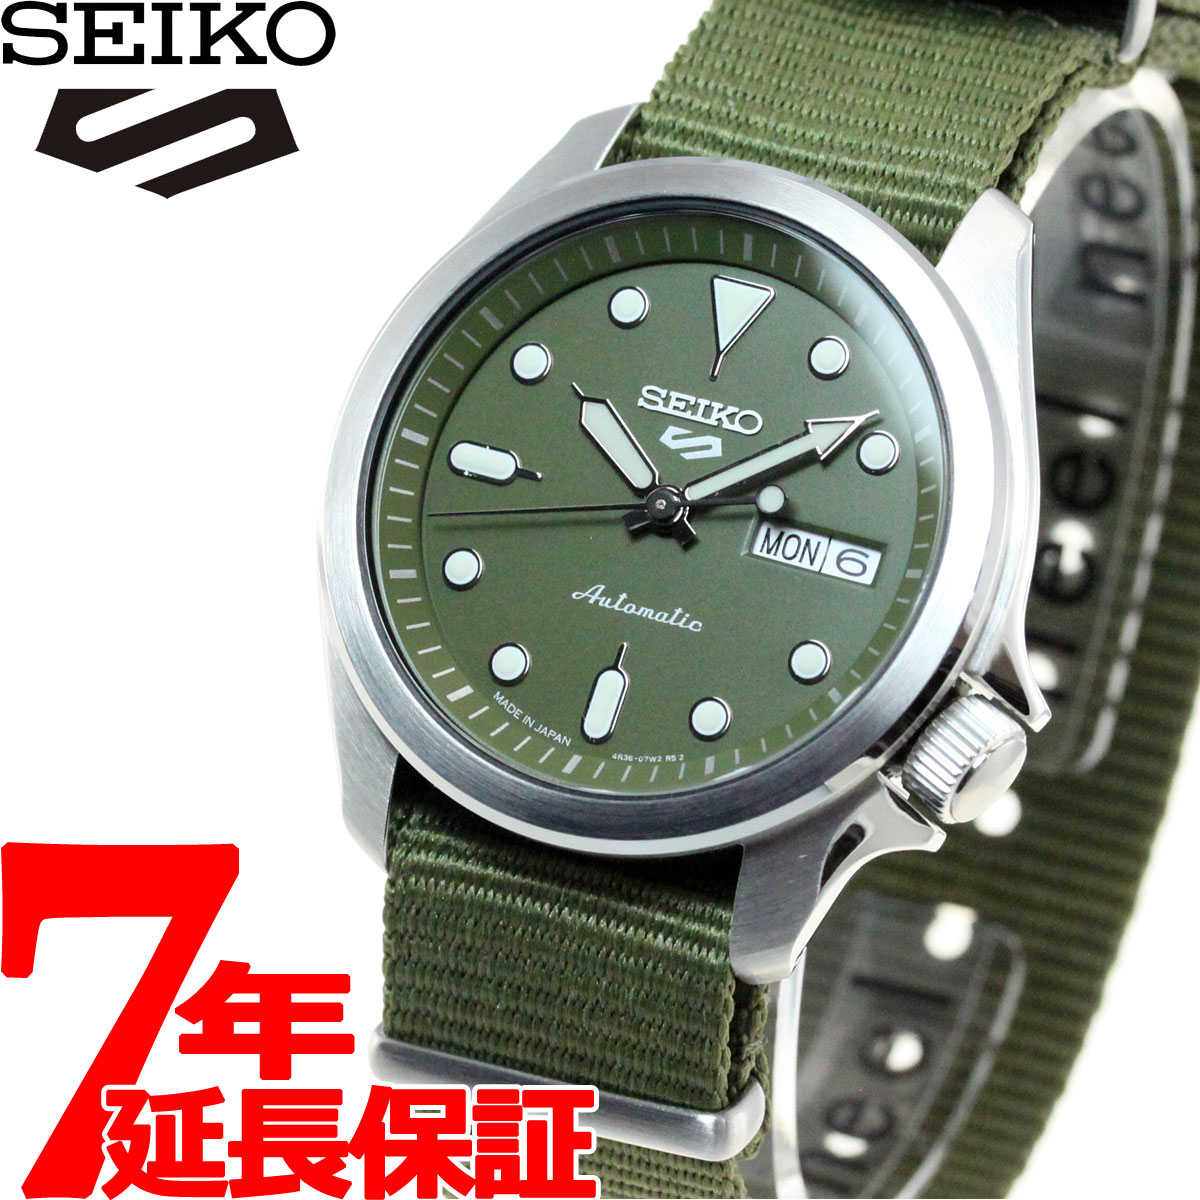 セイコーファイブ セイコー5 スポーツ SEIKO 5 SPORTS 自動巻き メカニカル 流通限定モデル 腕時計 メンズ セイコーファイブ スポーツ Sports SBSA055